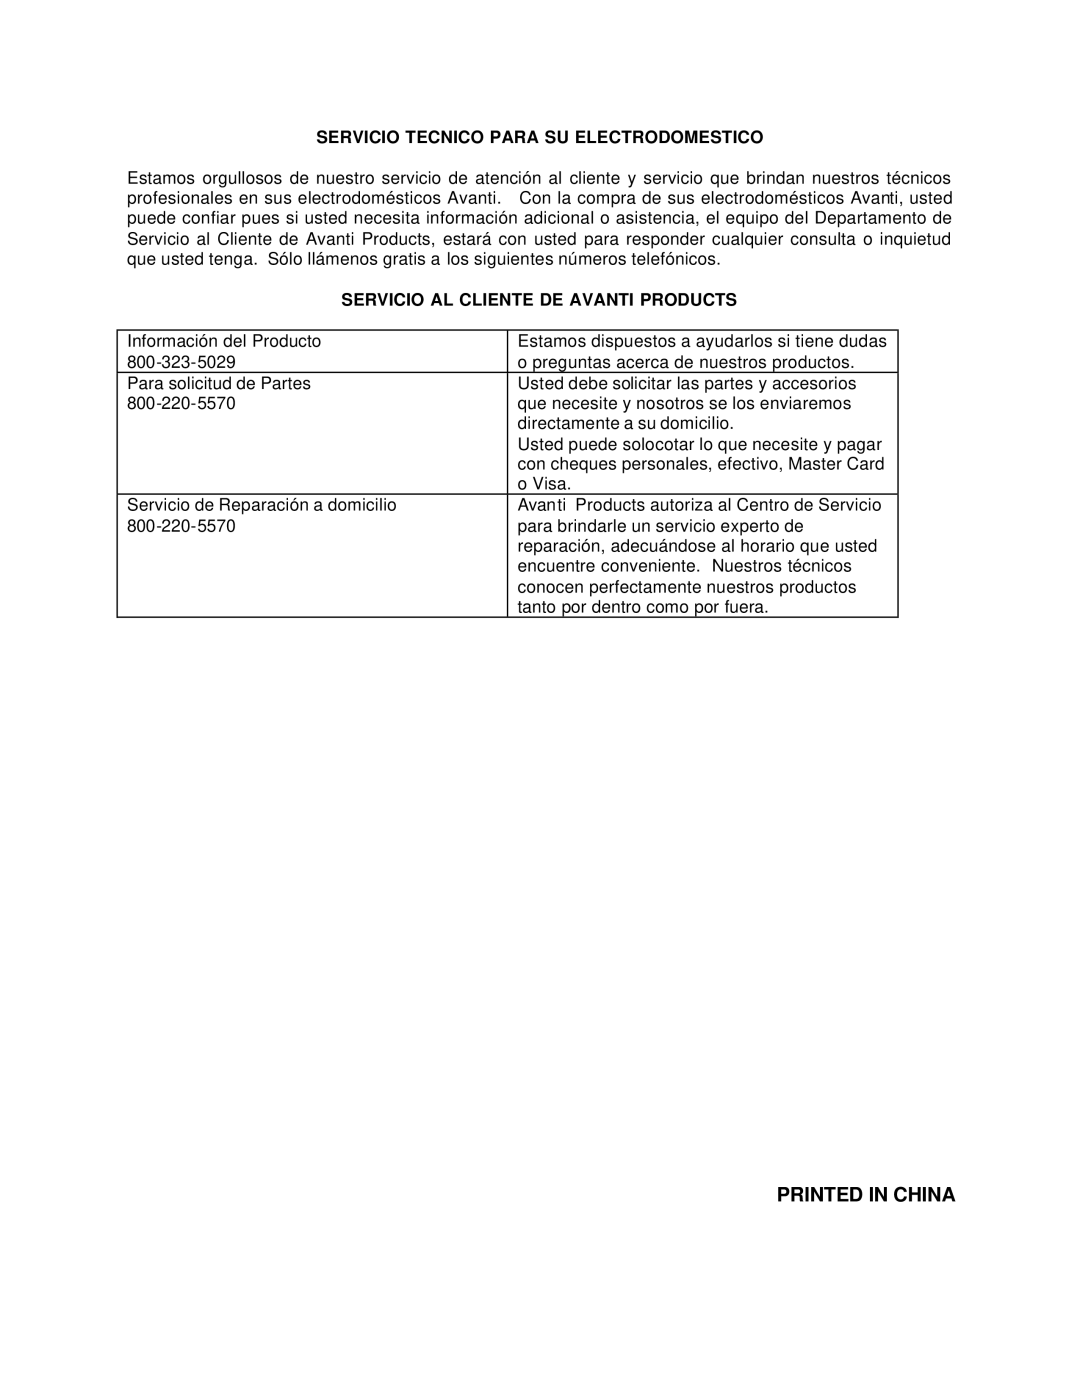 Avanti CF210G instruction manual Servicio Tecnico Para SU Electrodomestico, Servicio AL Cliente DE Avanti Products 